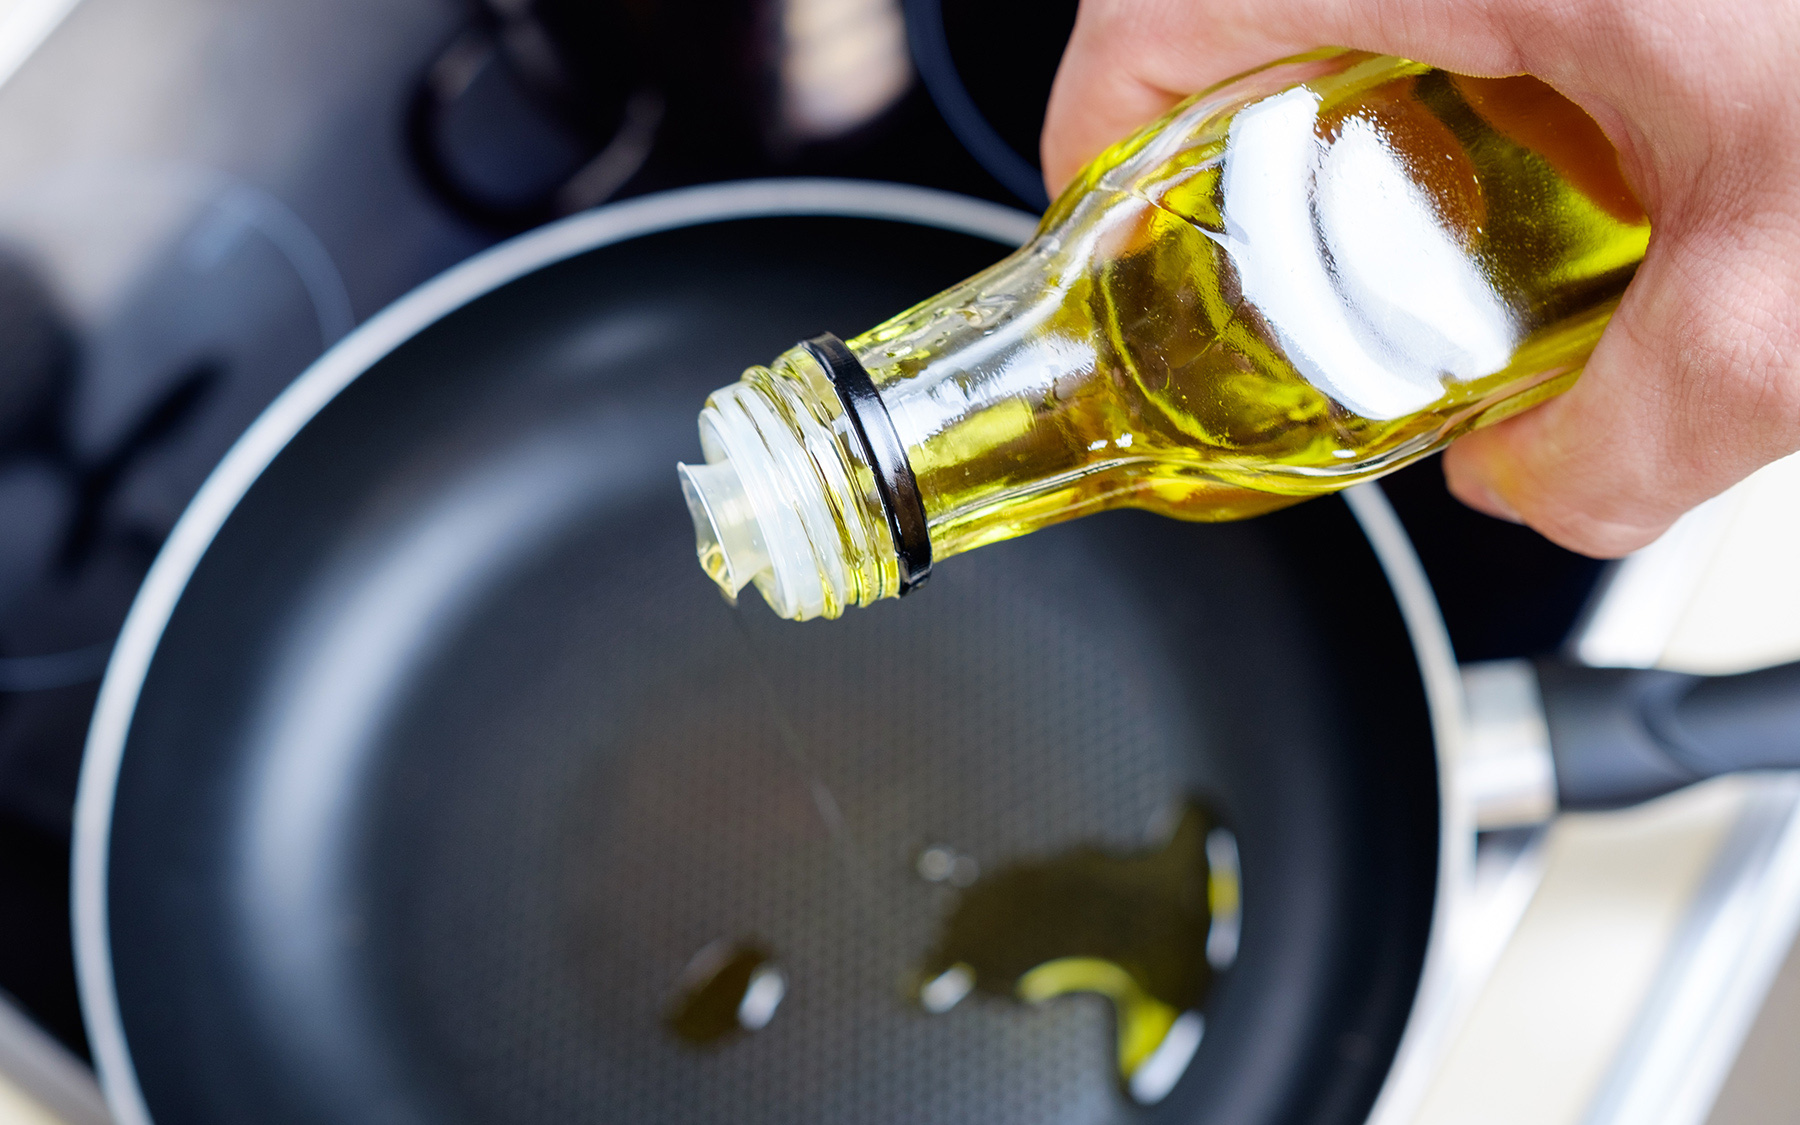 Tổng hợp những loại dầu ăn tốt cho sức khỏe và cách bảo quản, sử dụng dầu tốt cho sức khỏe